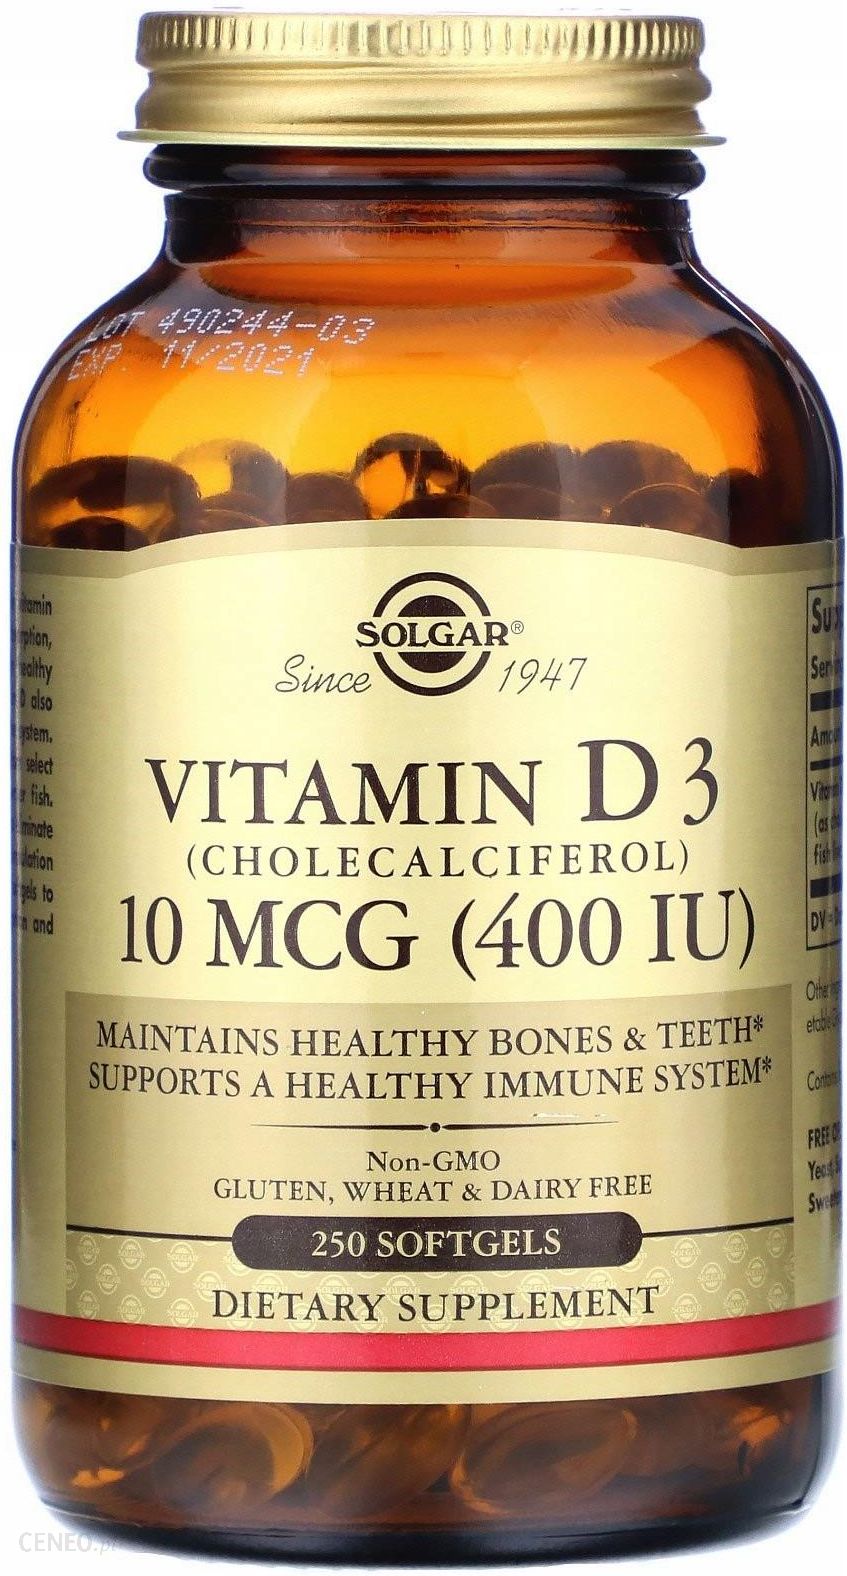 Вит д мкг. Капсулы Solgar Vitamin d3. Солгар d3 10 MCG. Солгар витамин д3 капсулы. Solgar, витамин d3 (холекальциферол), 250 мкг (10 000 ме).